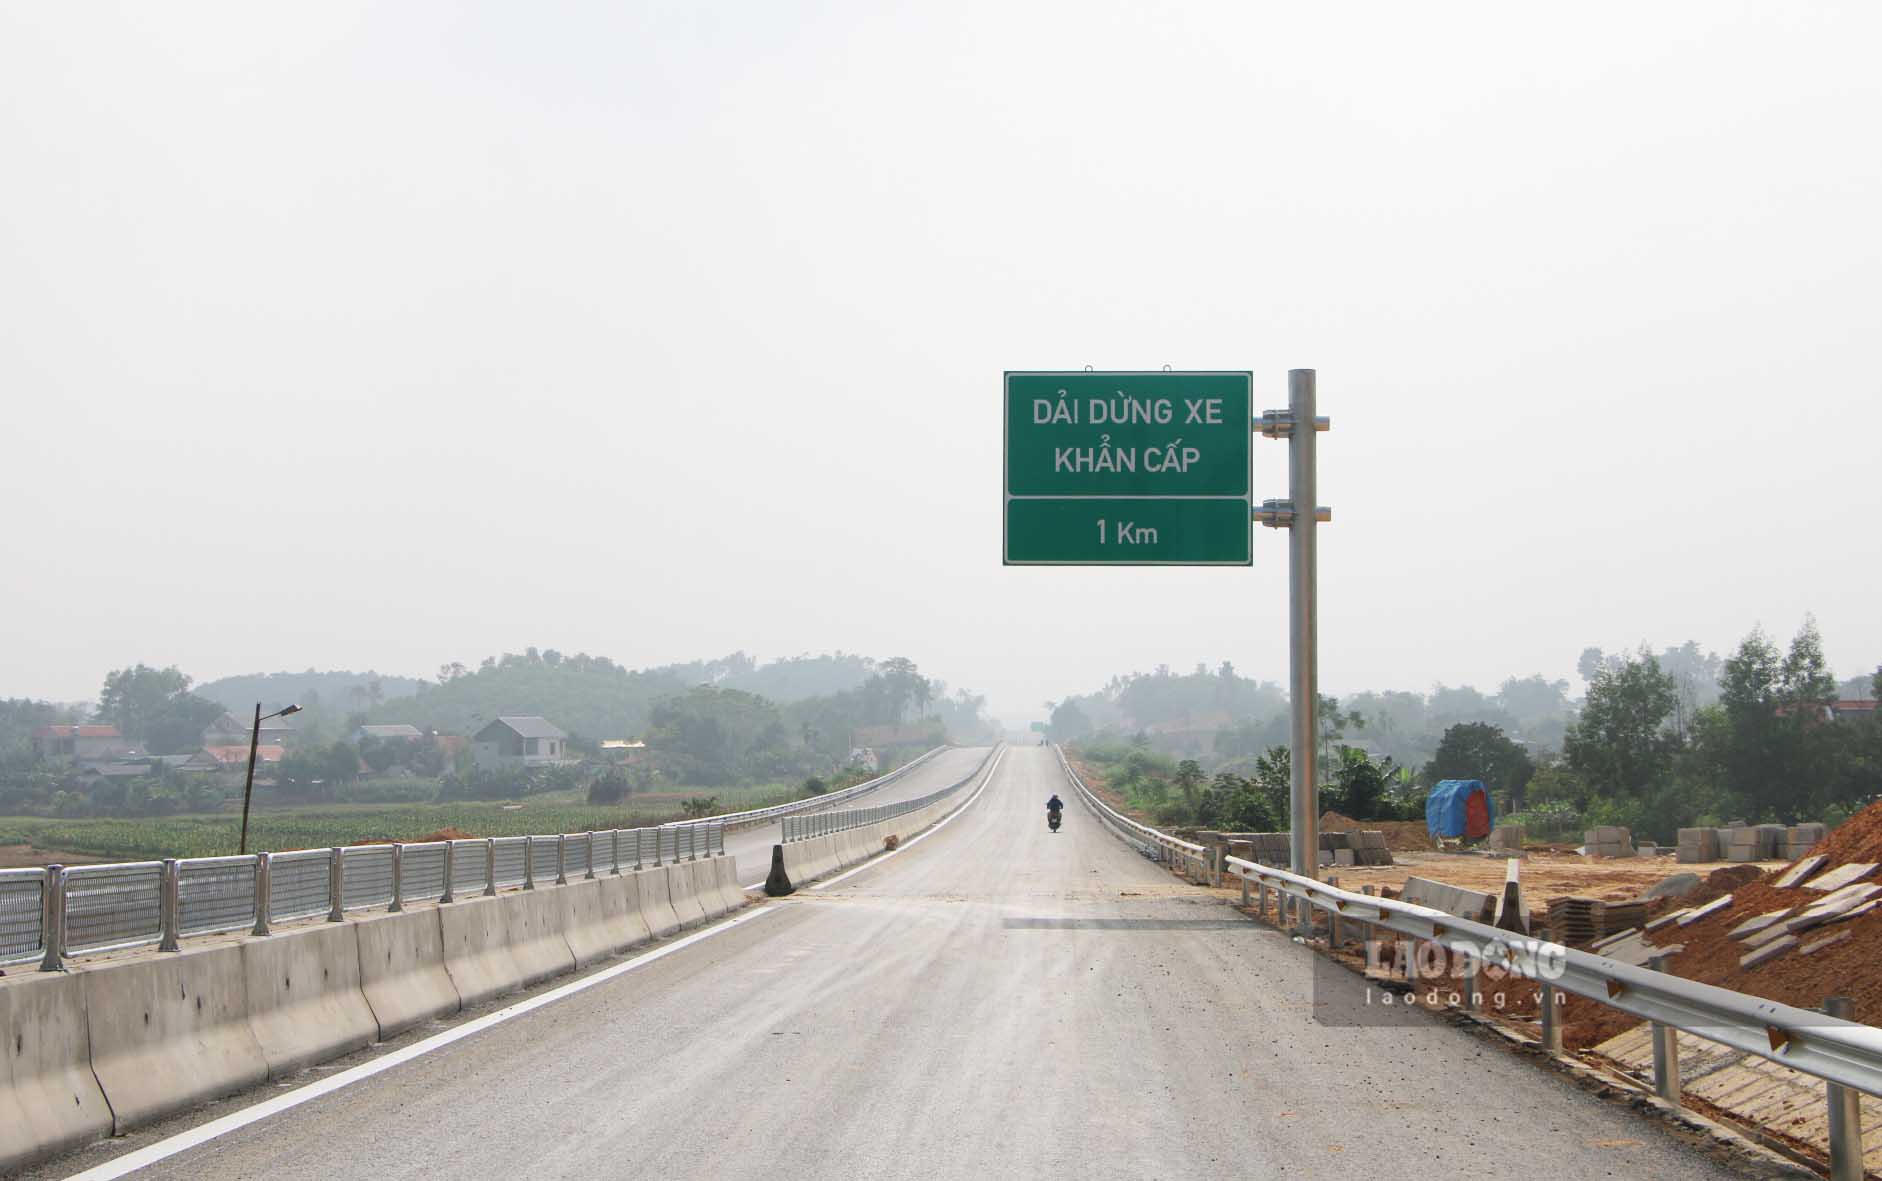 Cao tốc Tuyên Quang - Phú Thọ quy định tốc độ cho phép dưới chuẩn